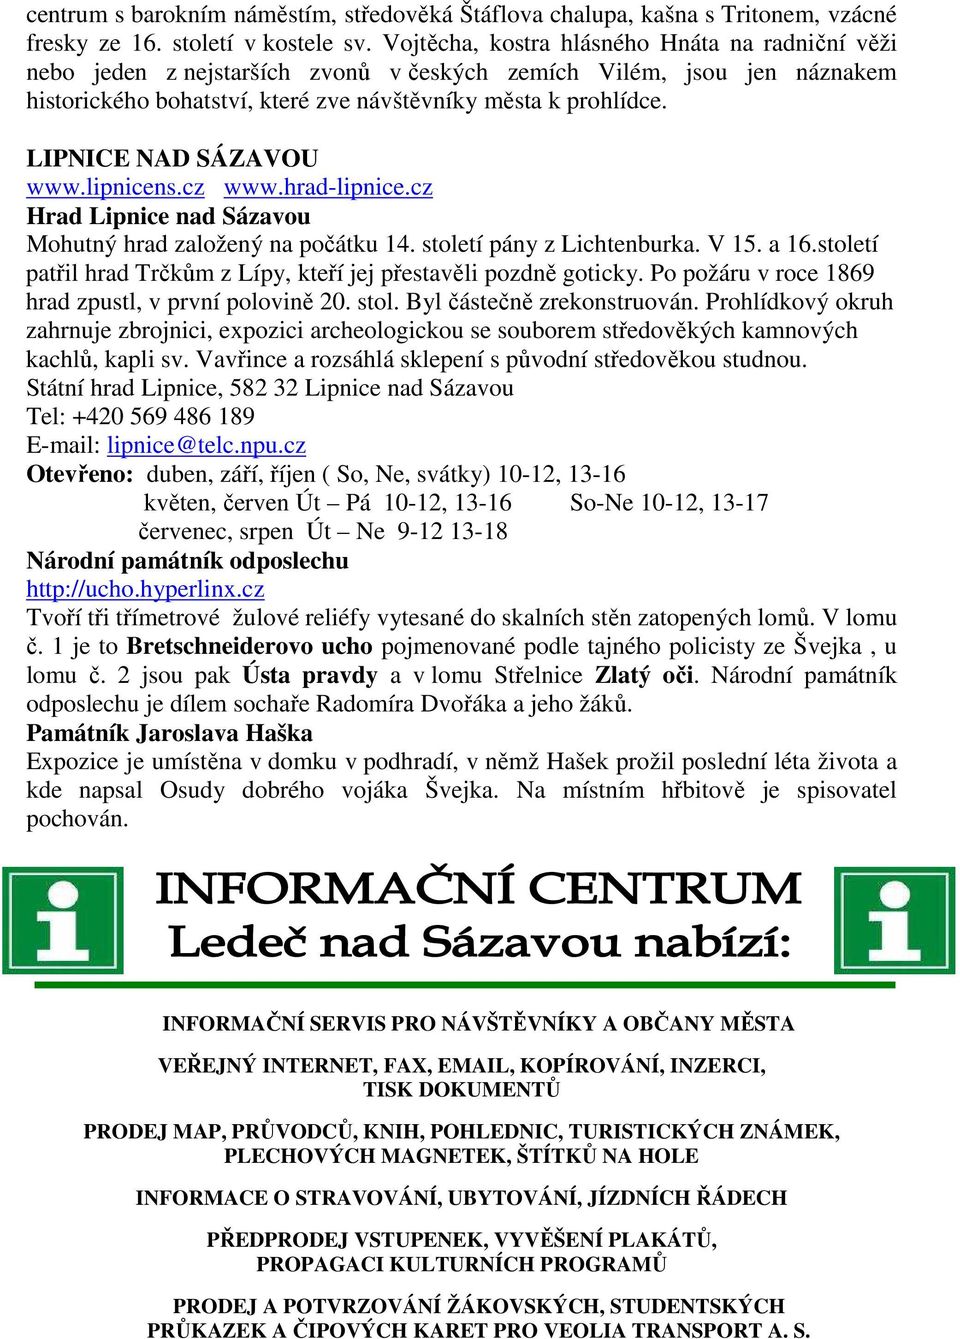 LIPNICE NAD SÁZAVOU www.lipnicens.cz www.hrad-lipnice.cz Hrad Lipnice nad Sázavou Mohutný hrad založený na počátku 14. století pány z Lichtenburka. V 15. a 16.